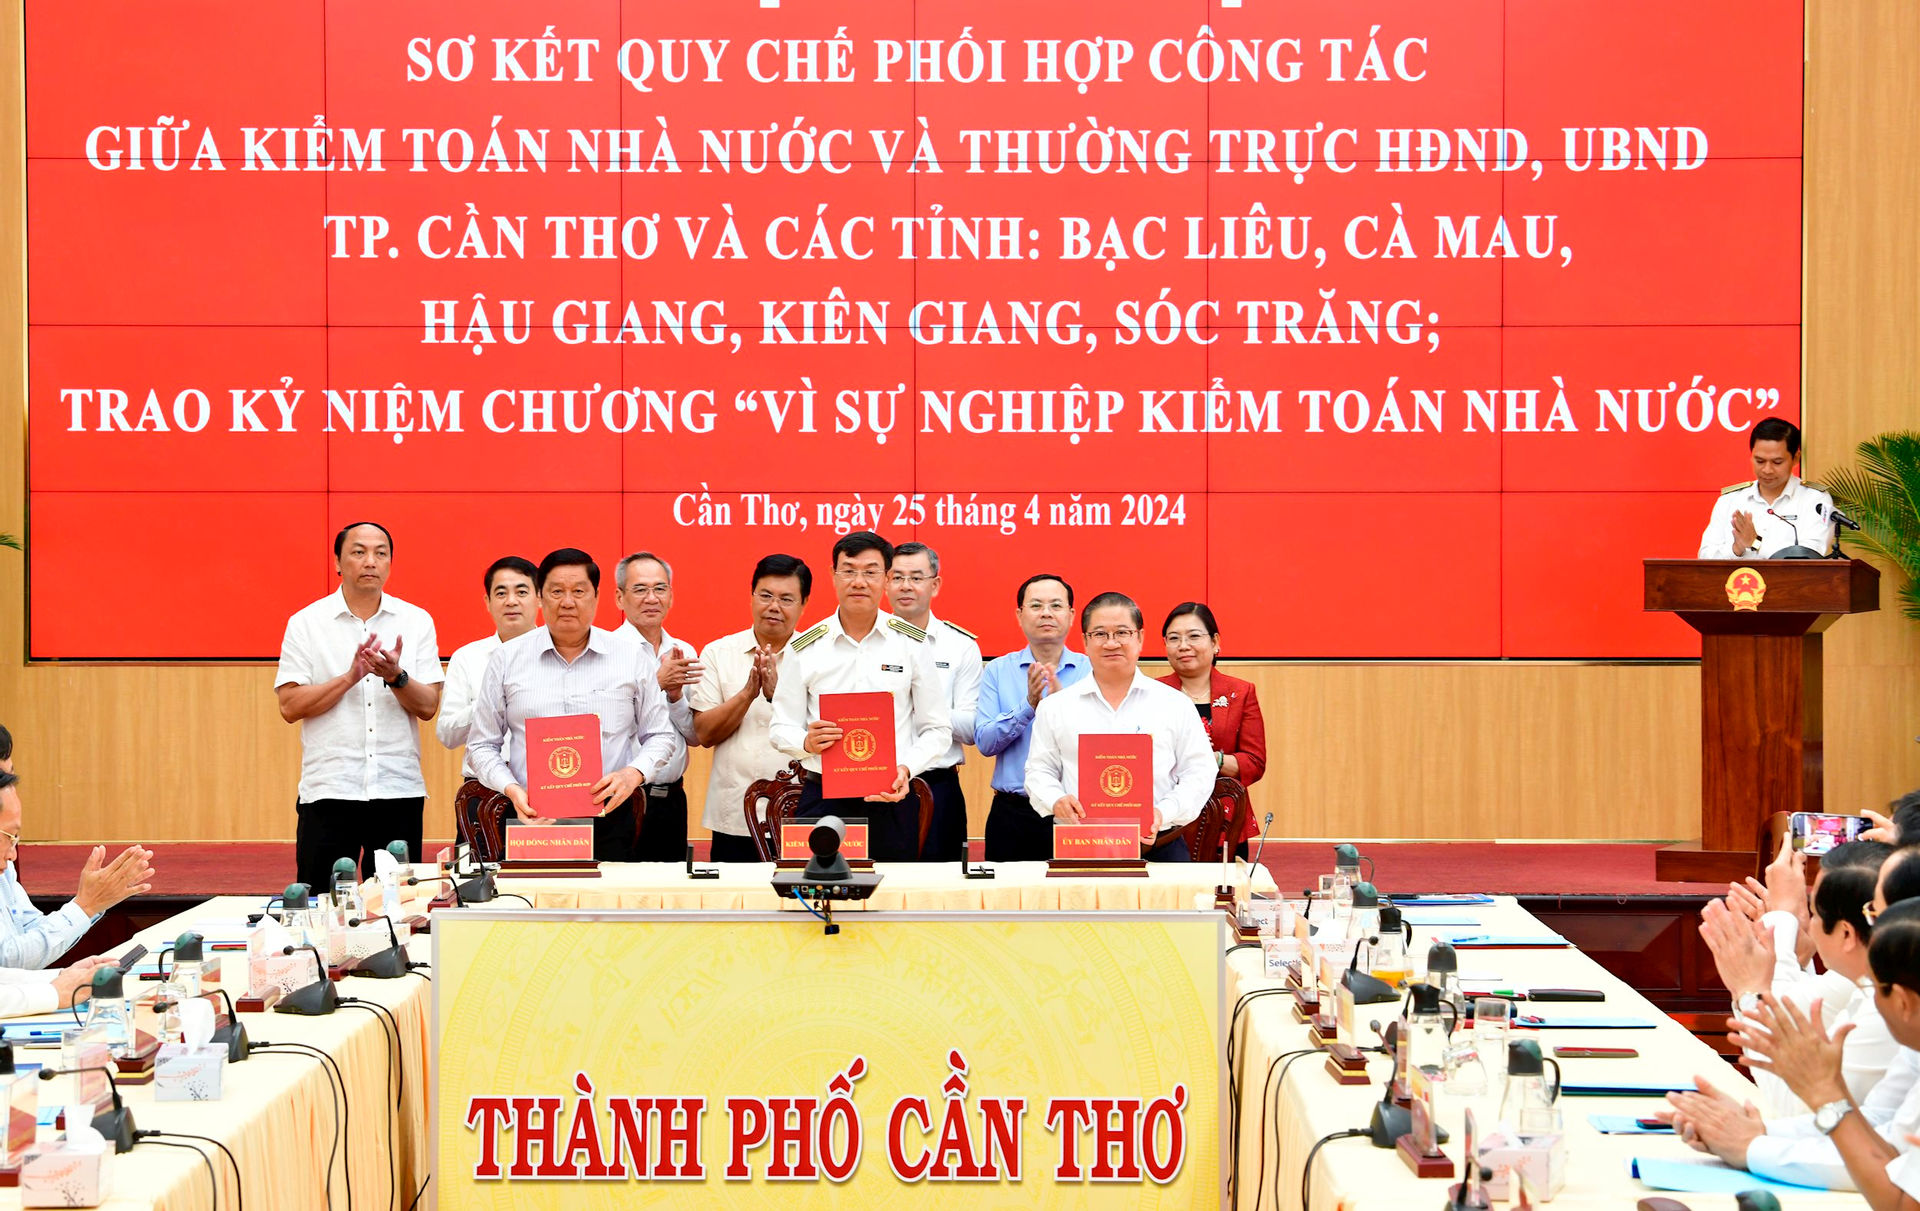 11.-ktnn-ky-quy-che-phoi-hop-voi-thuong-truc-hdnd-ubnd-tp.-can-tho(2).jpg